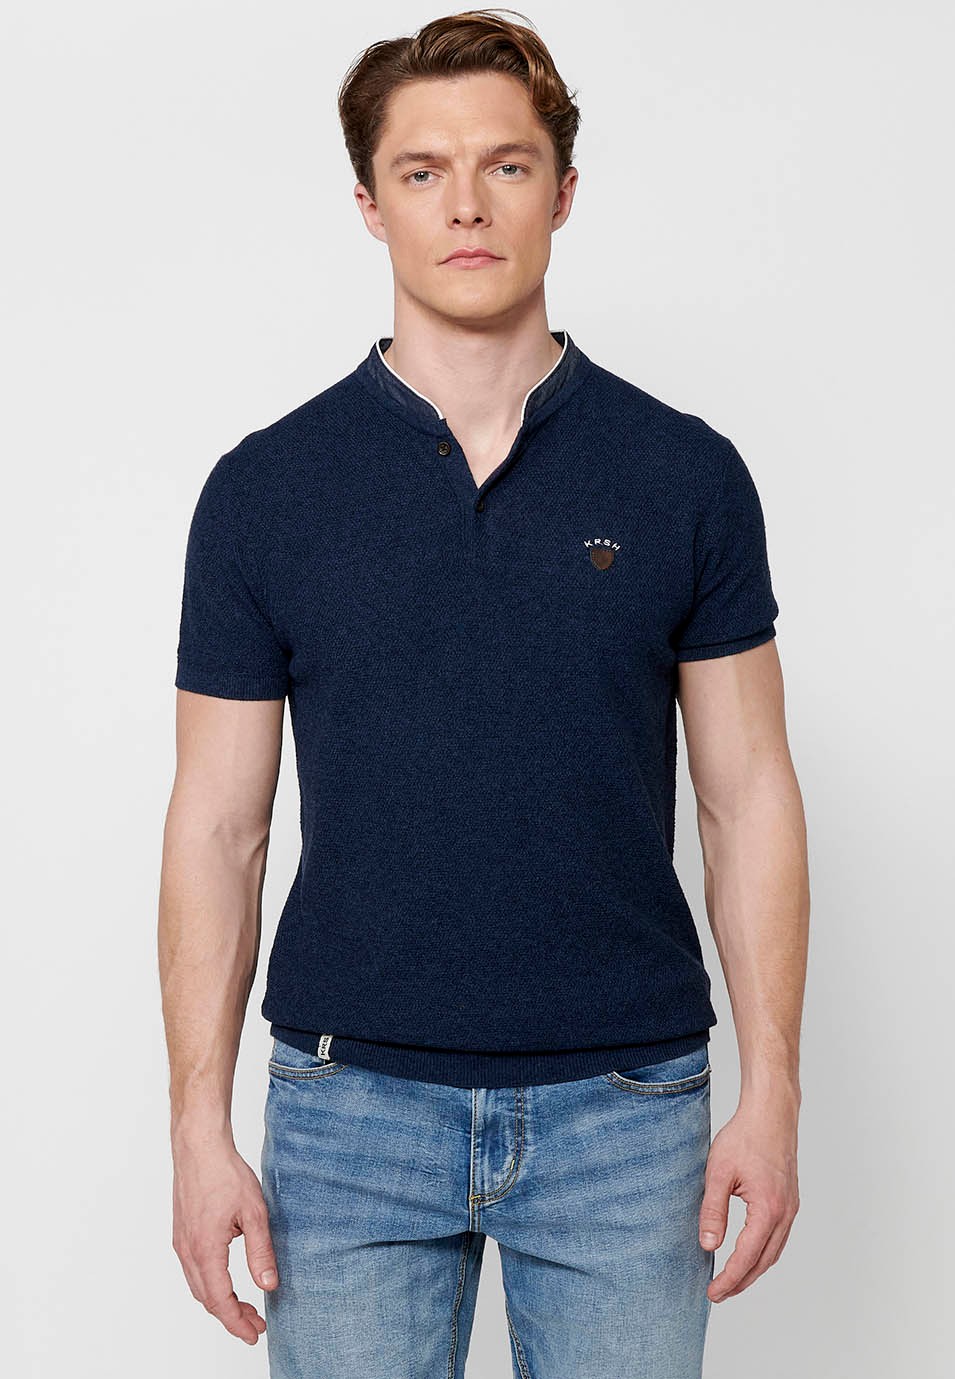 Kurzarm-Poloshirt aus Baumwolle mit Rundhalsausschnitt und geknöpfter Öffnung in strukturierter Marineblau-Farbe für Herren